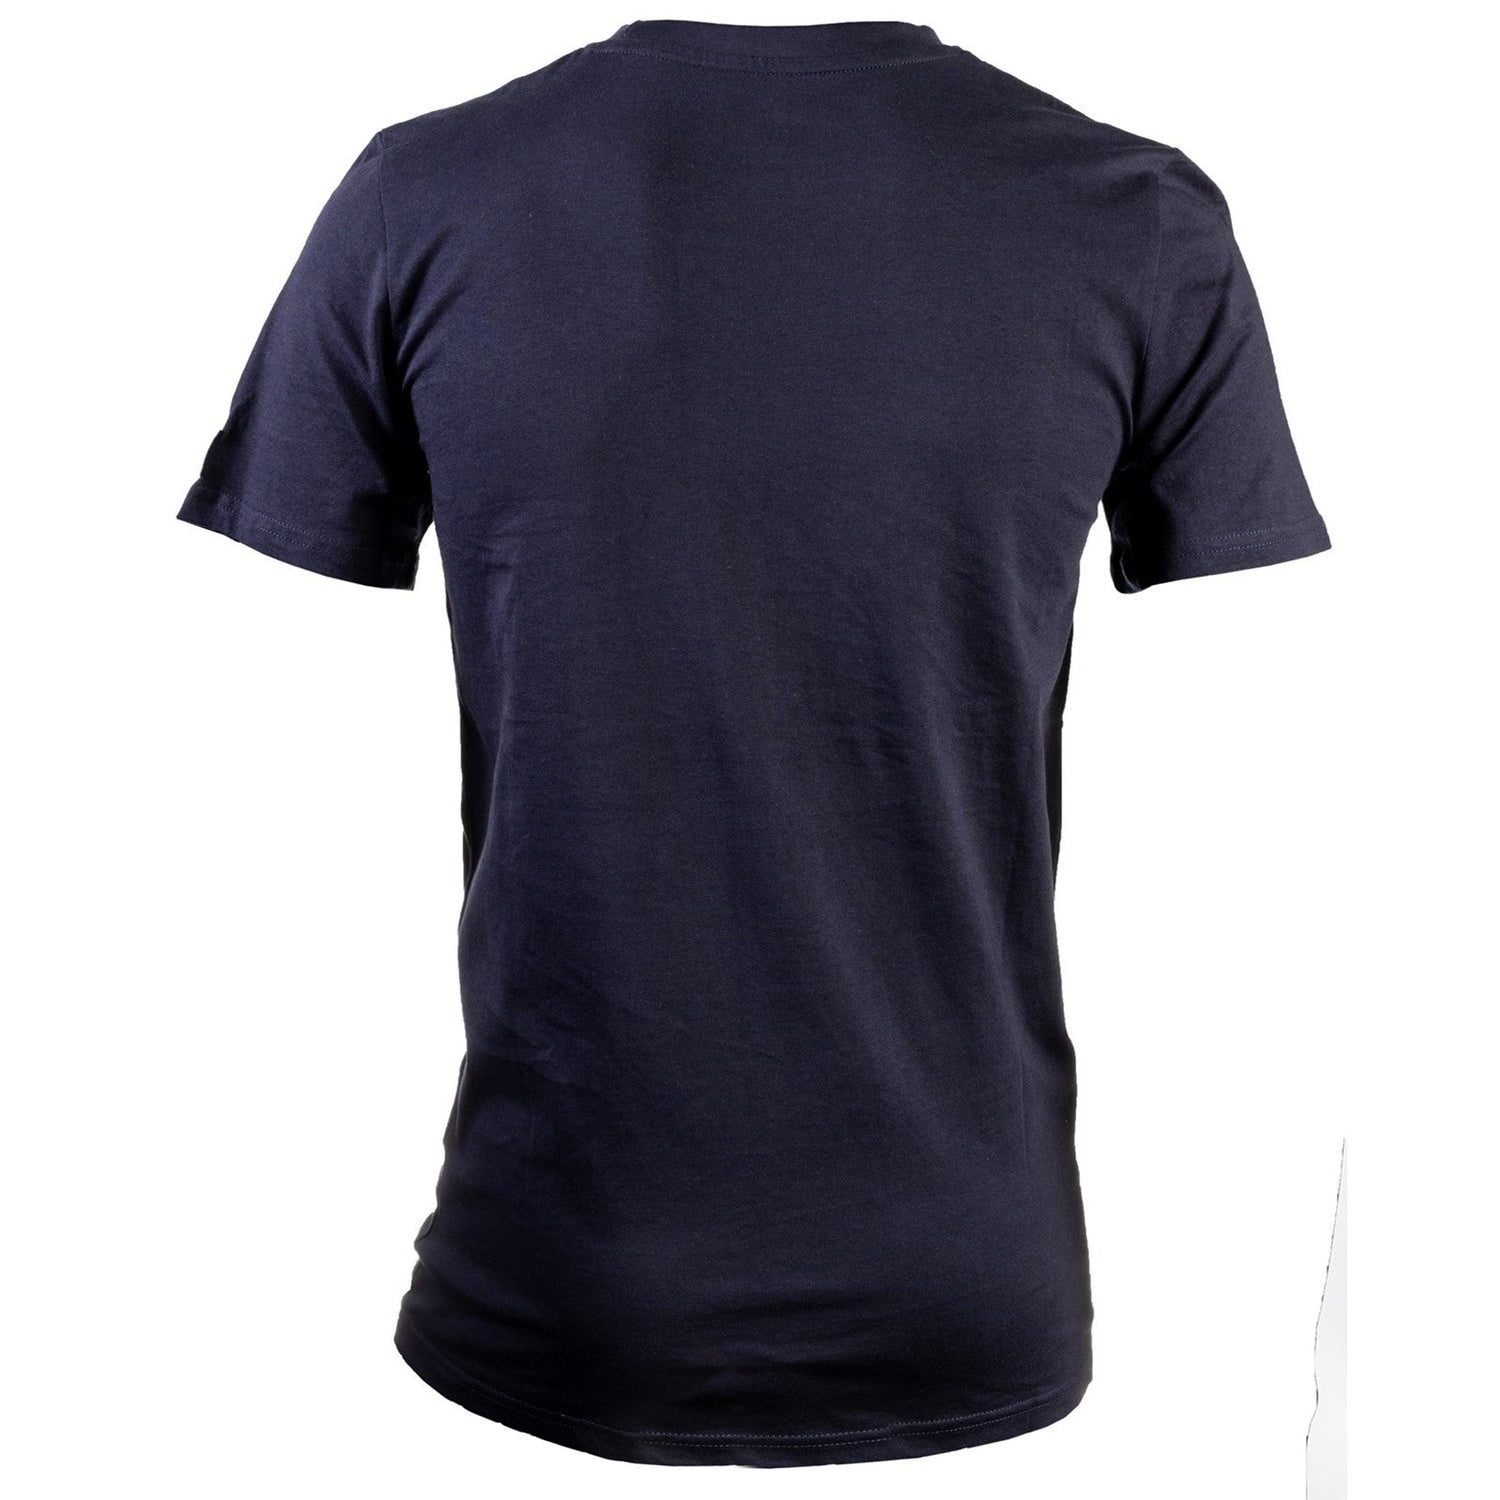 Caterpillar Essentials Short Sleeve T Shirt. Navy. Rear View 